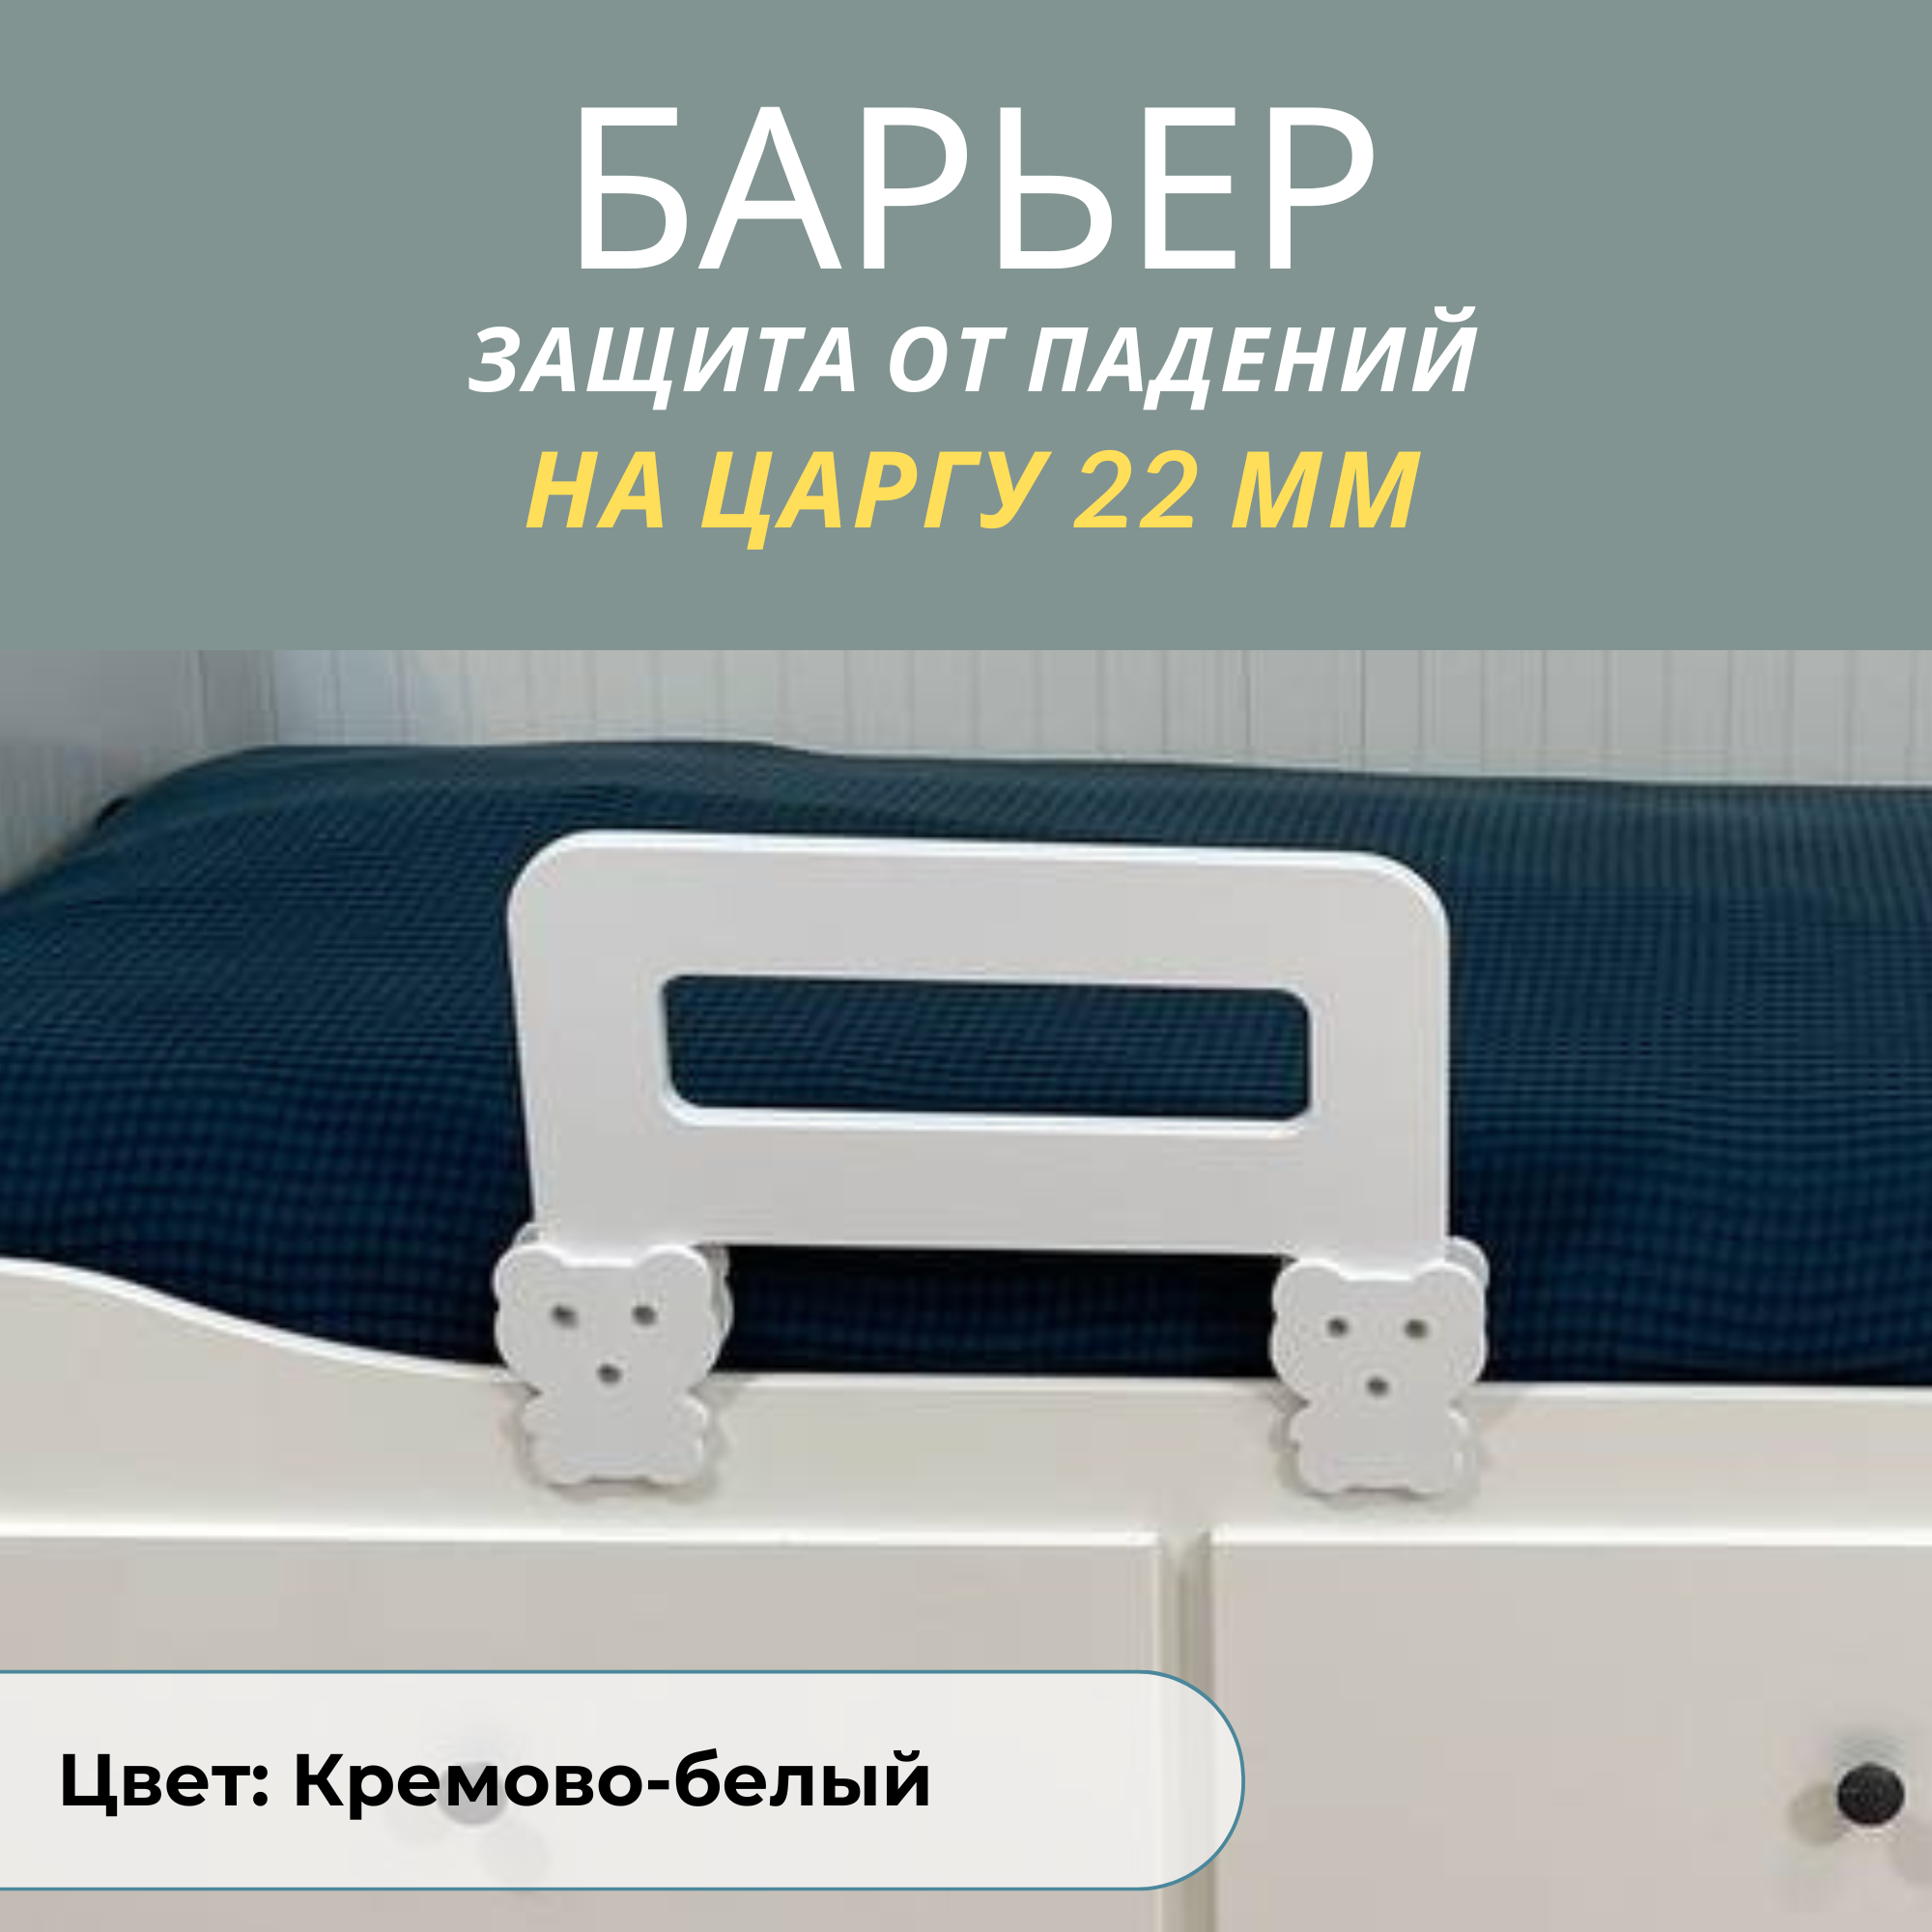 Защитный барьер для кровати РАСТИ ЗДОРОВО бортик белый 40 см. на царгу 22 мм., М40Бел22